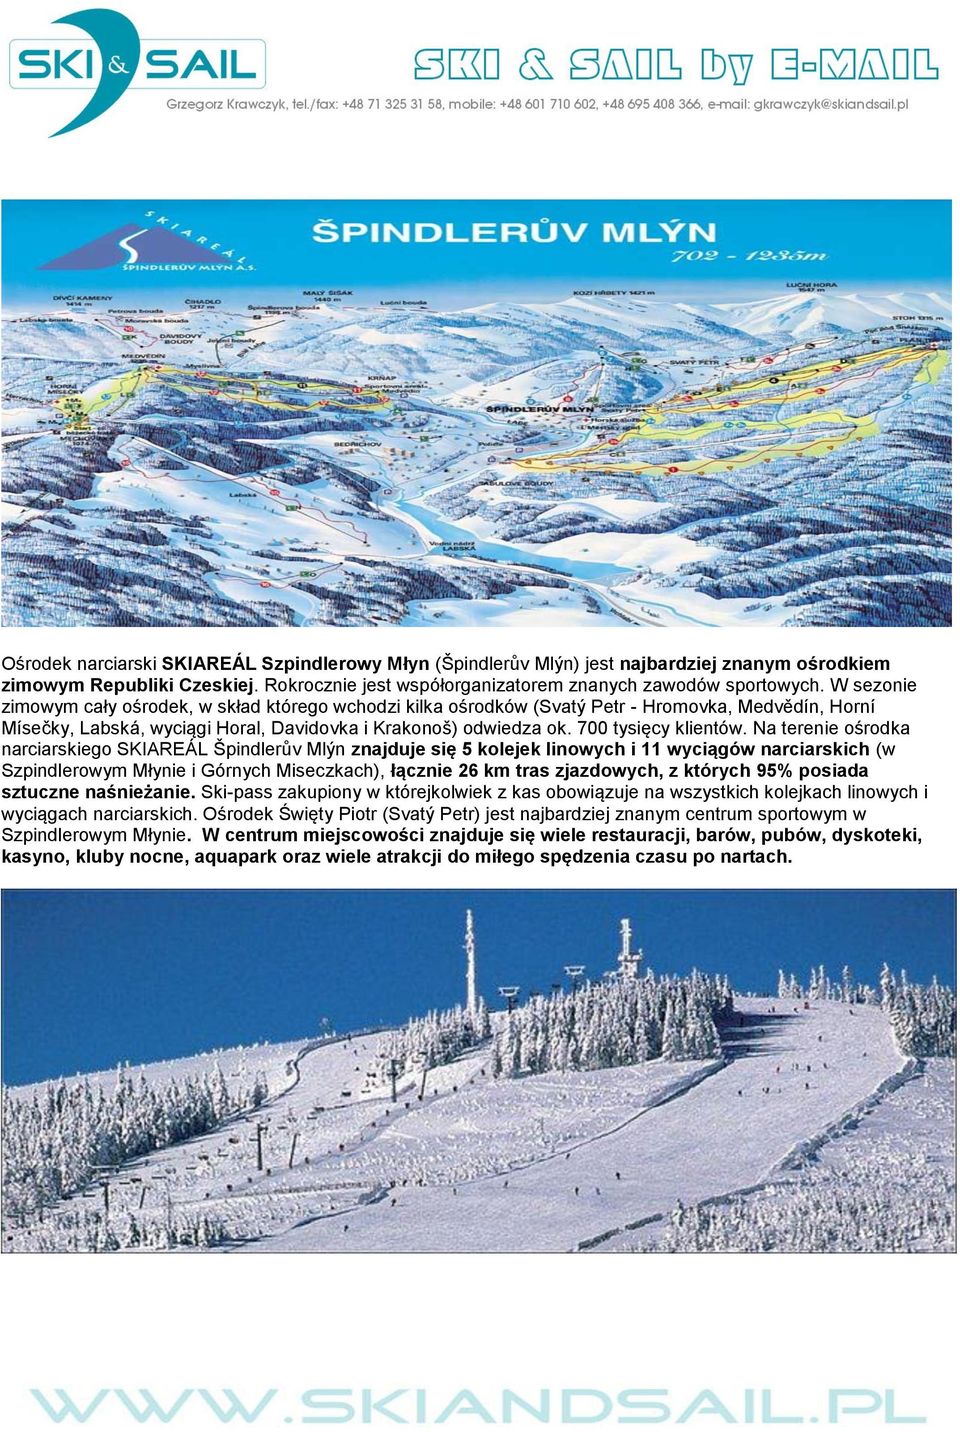 Na terenie ośrodka narciarskiego SKIAREÁL Špindlerův Mlýn znajduje się 5 kolejek linowych i 11 wyciągów narciarskich (w Szpindlerowym Młynie i Górnych Miseczkach), łącznie 26 km tras zjazdowych, z